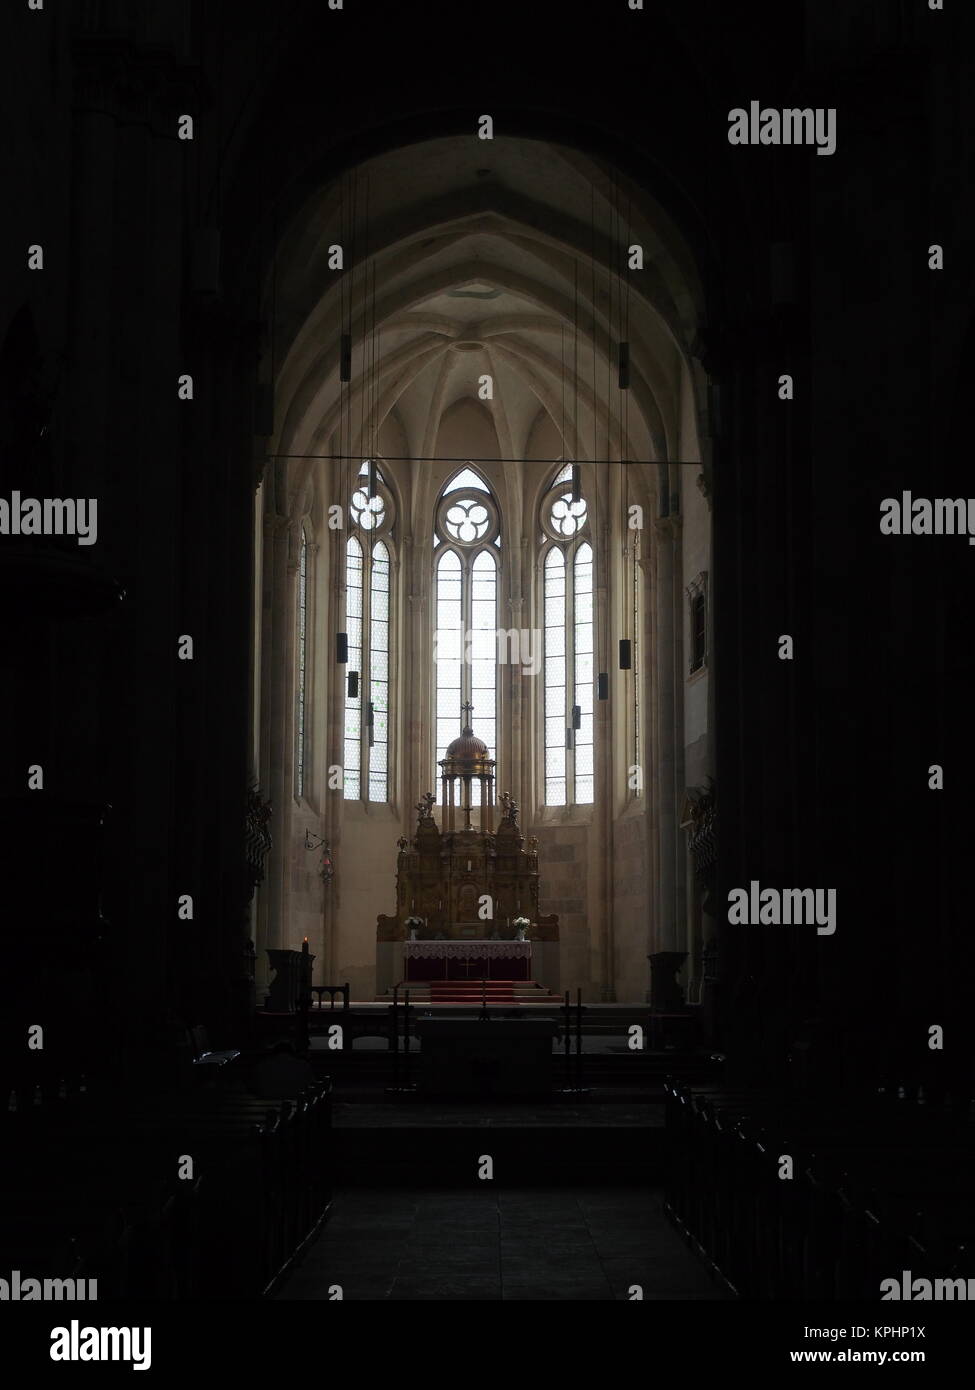 Altar in the Coronation Cathedral, Alba Iulia, Romania Stock Photo